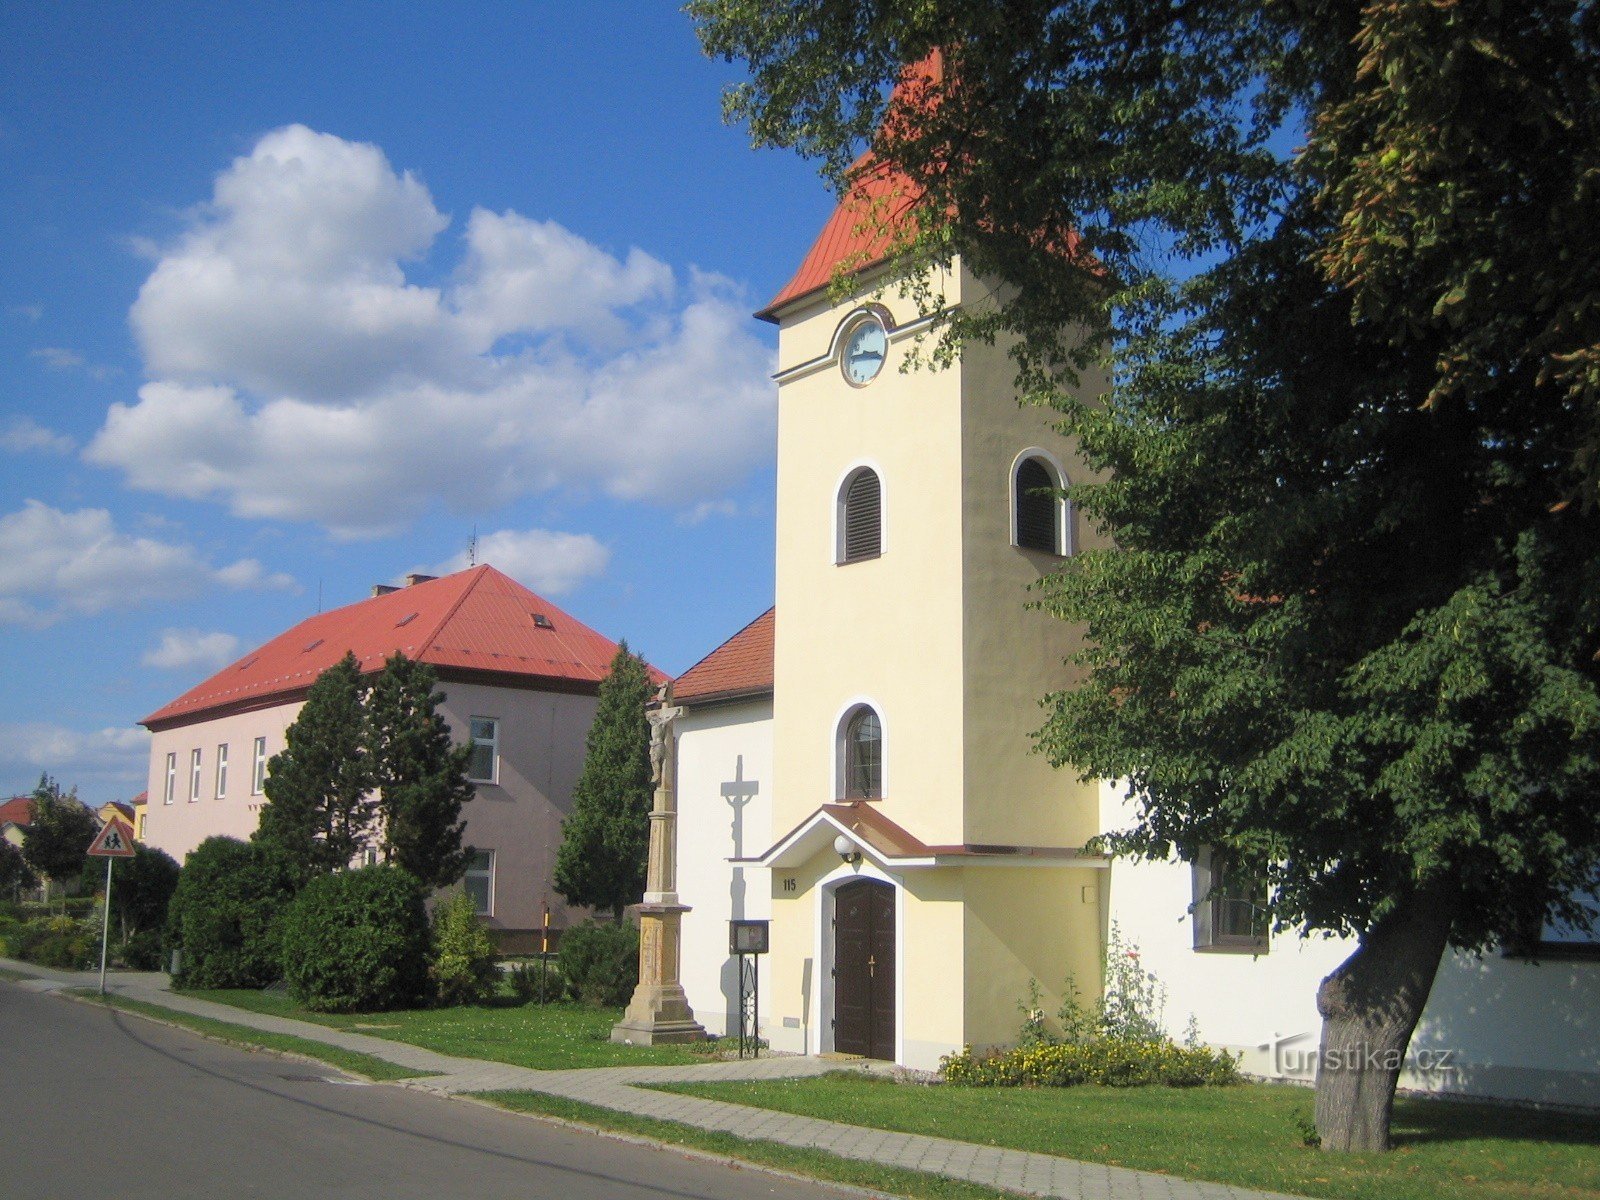 Knežpole - school en kerk